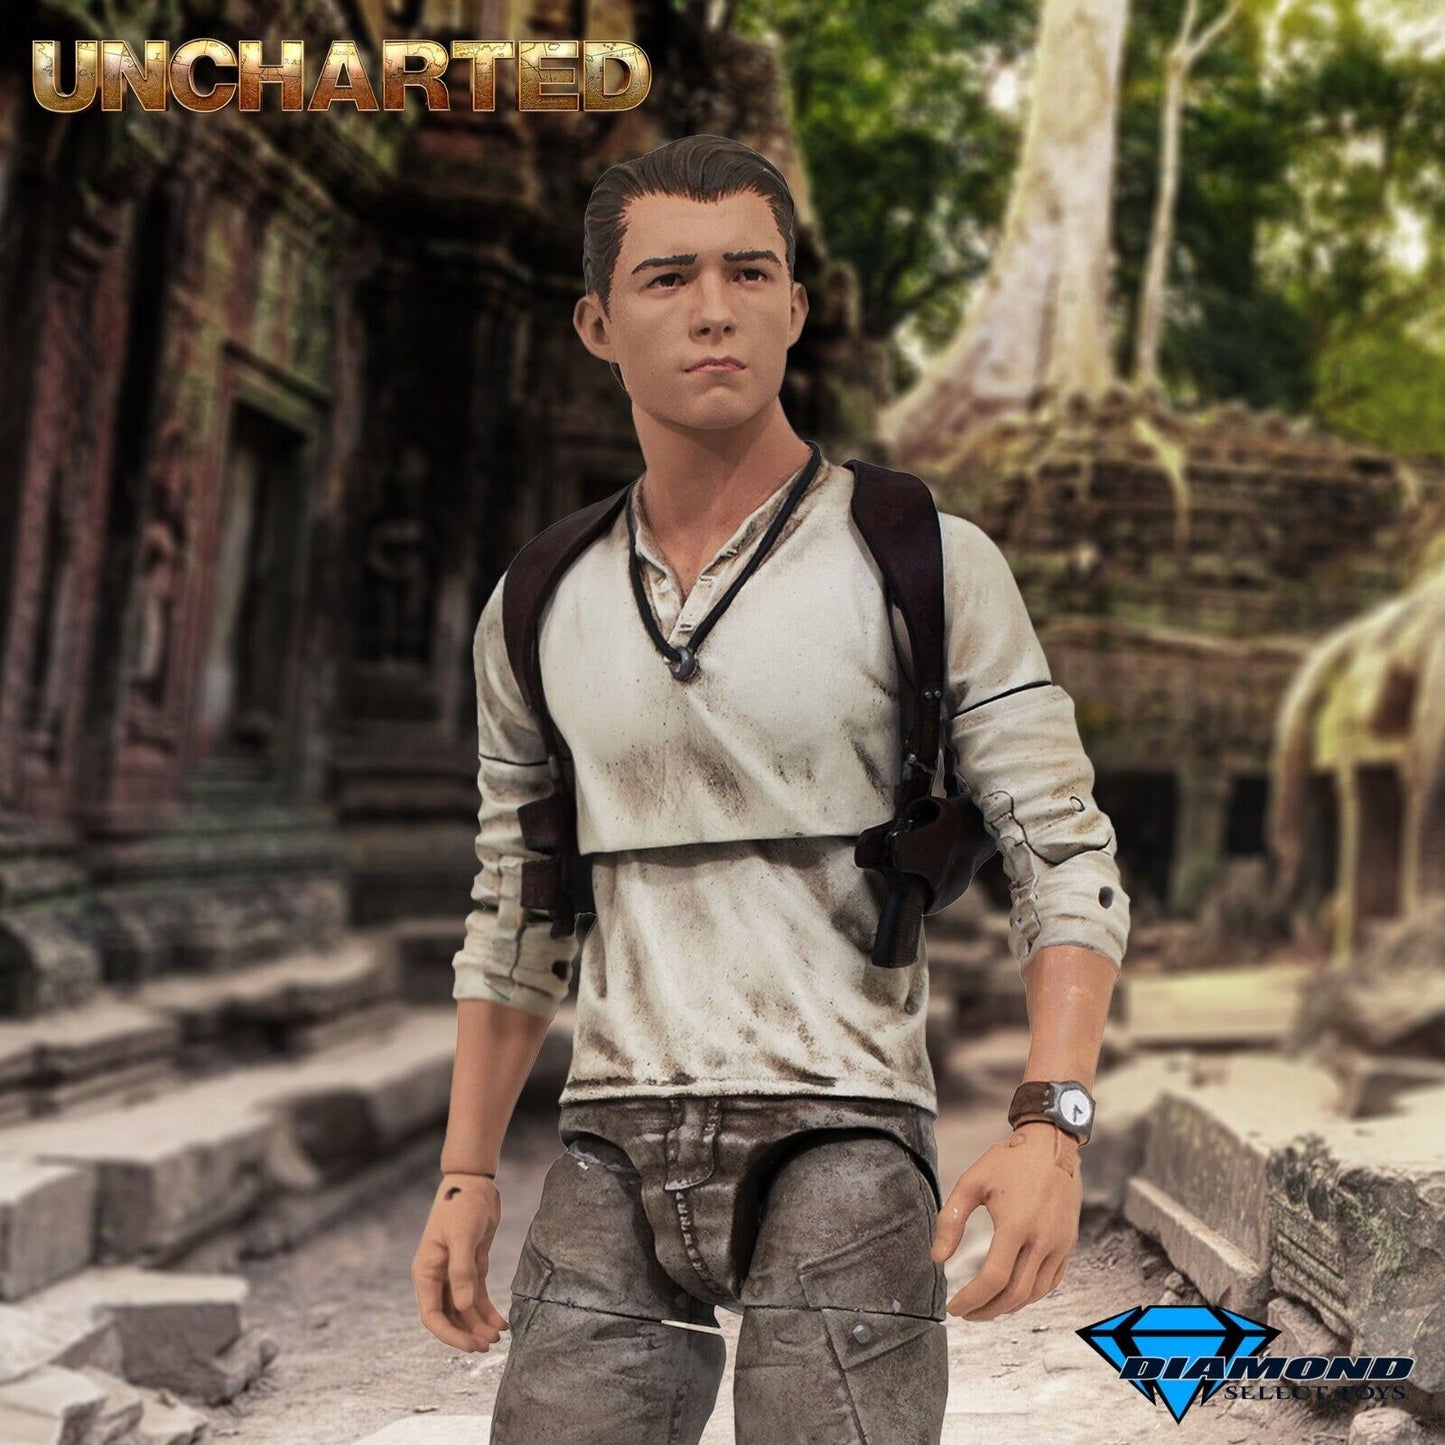 Uncharted The Nathan Drake Collection - Ninja Games